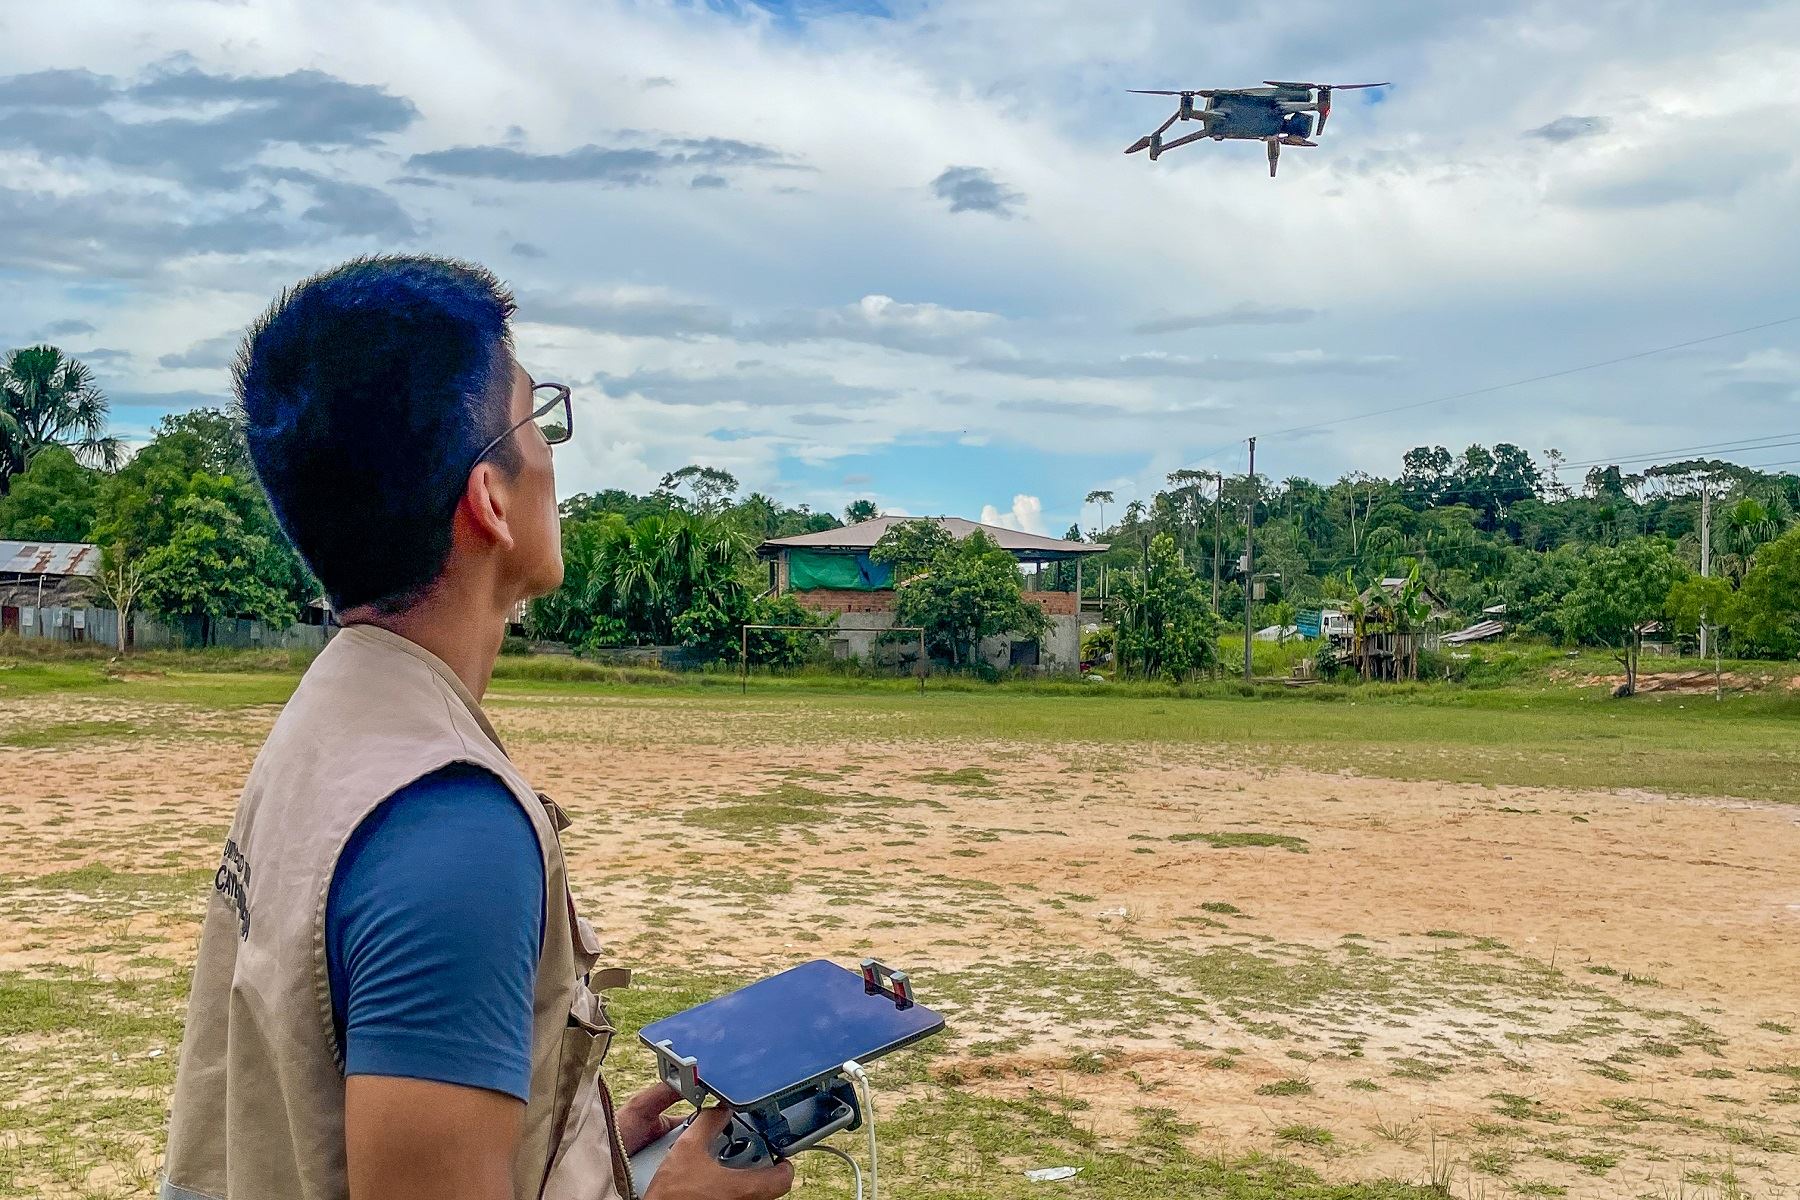 El campo de la teledetección basada en drones está en constante cambio debido al desarrollo de nuevas tecnologías, regulaciones de operación y aplicaciones innovadoras